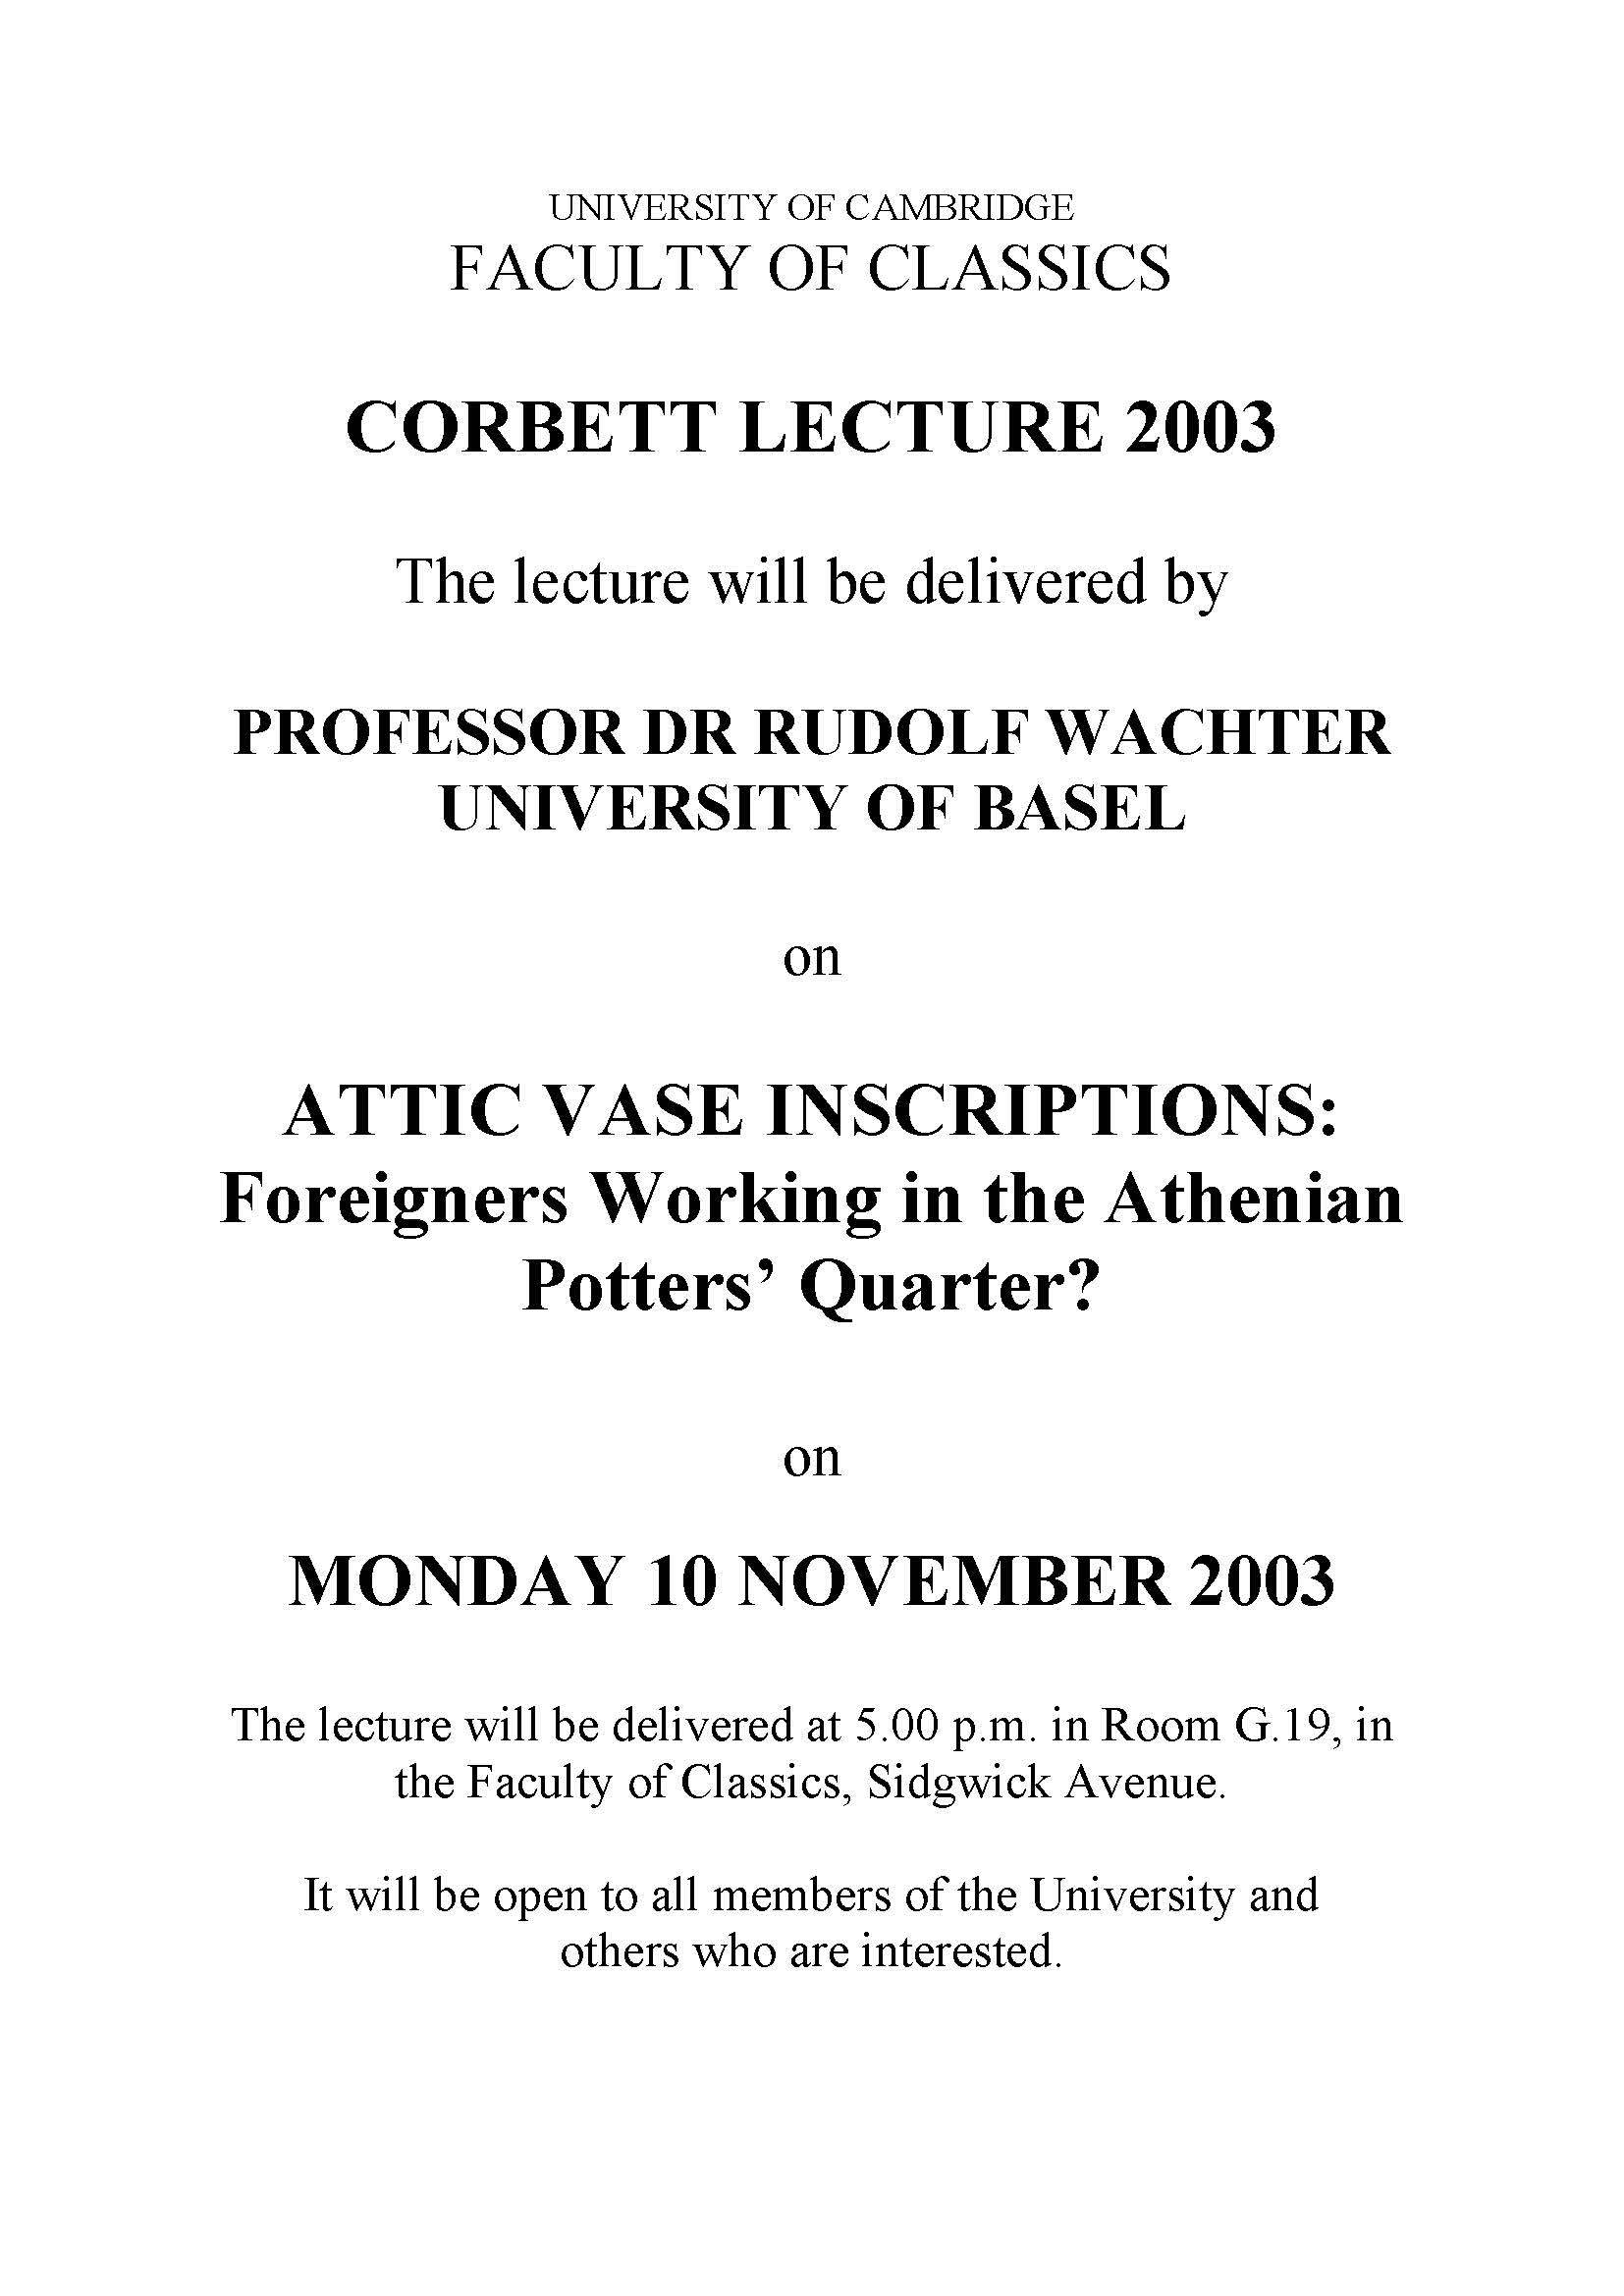 Corbett Lecture 2003